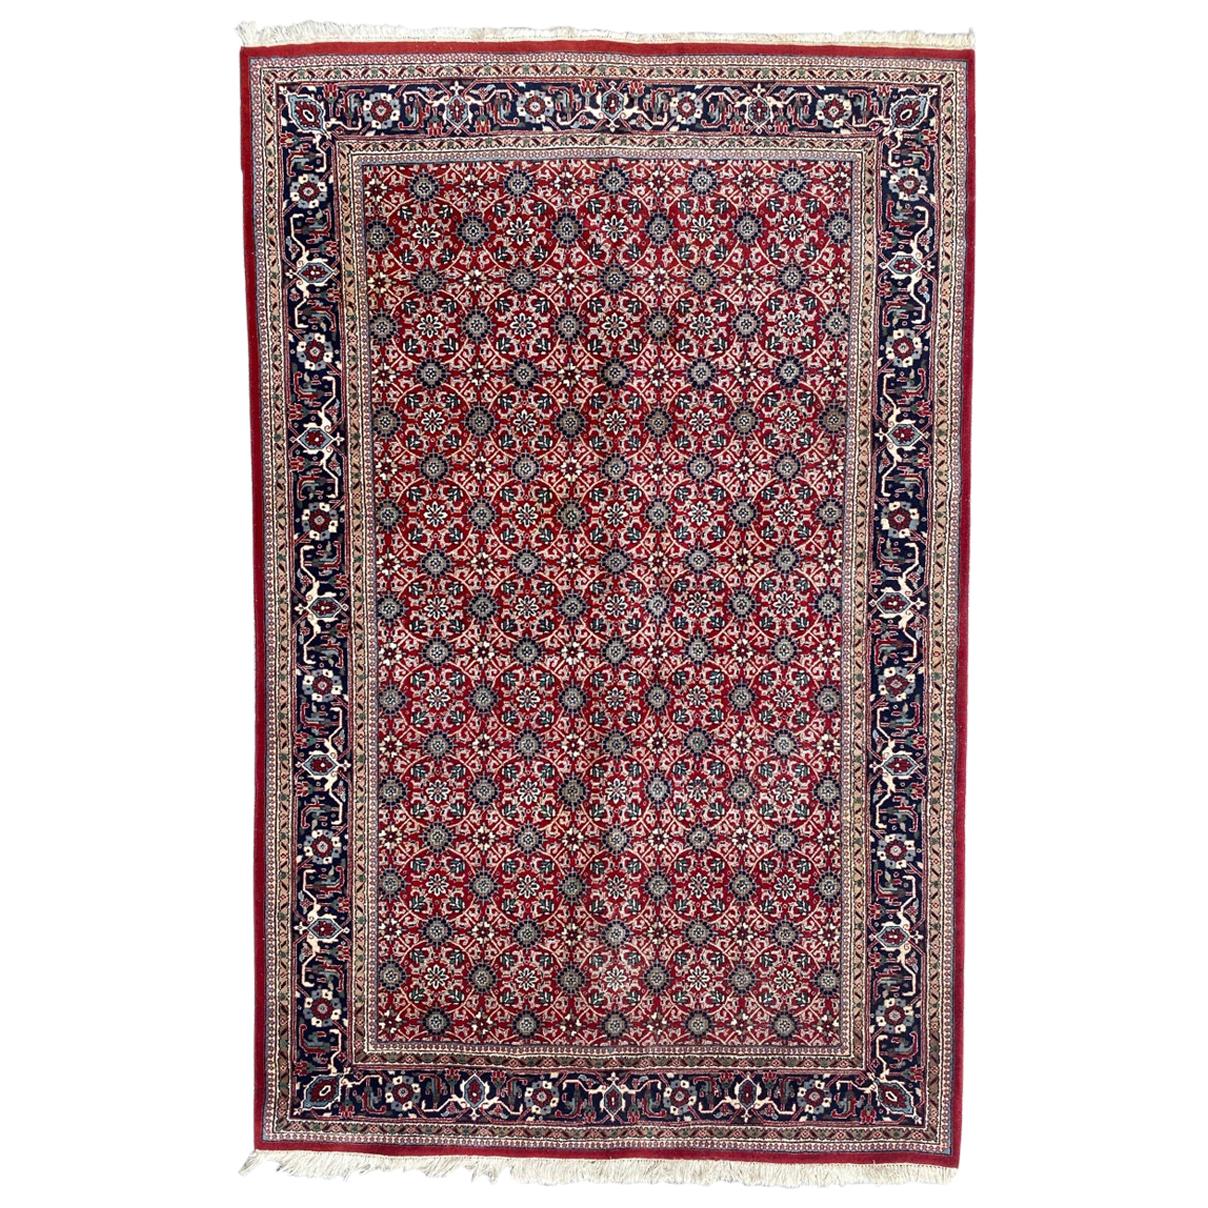 Bobyrug’s Nice Vintage Indian rug For Sale